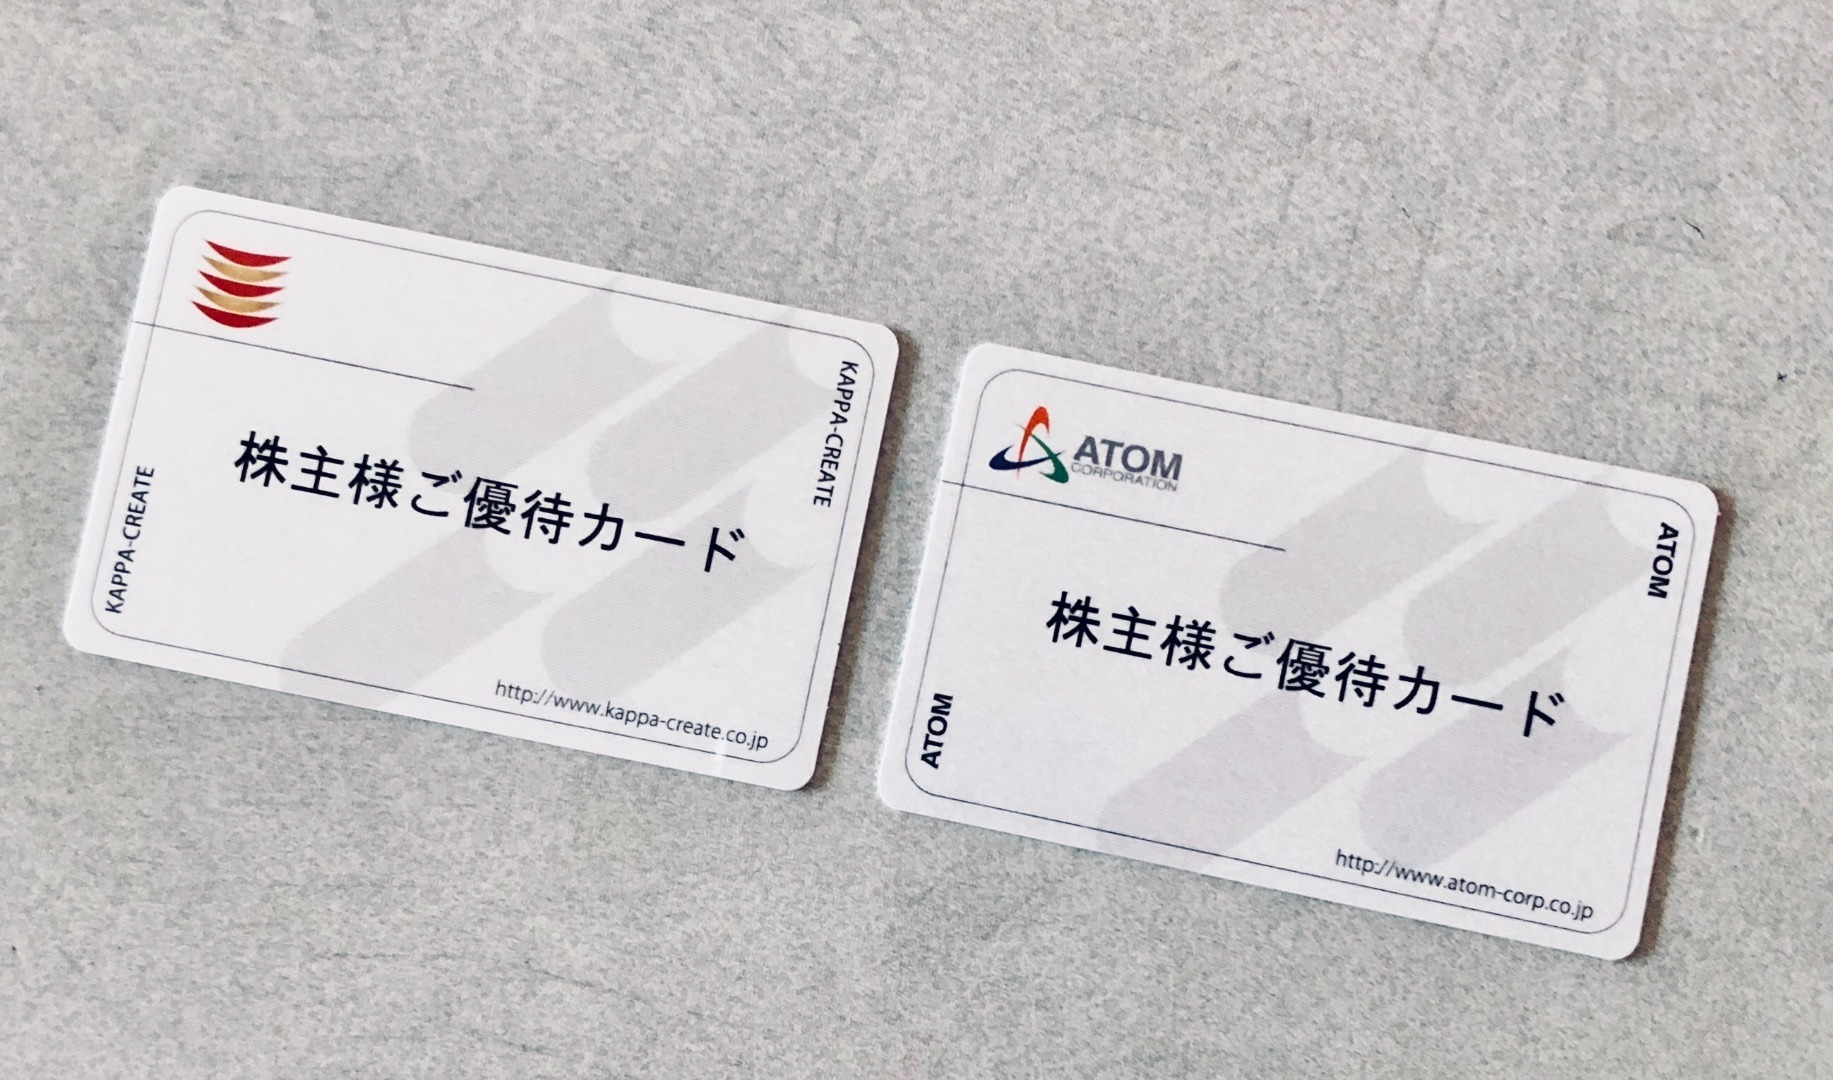 一部予約！】 アトム 株主優待カード - レストラン/食事券